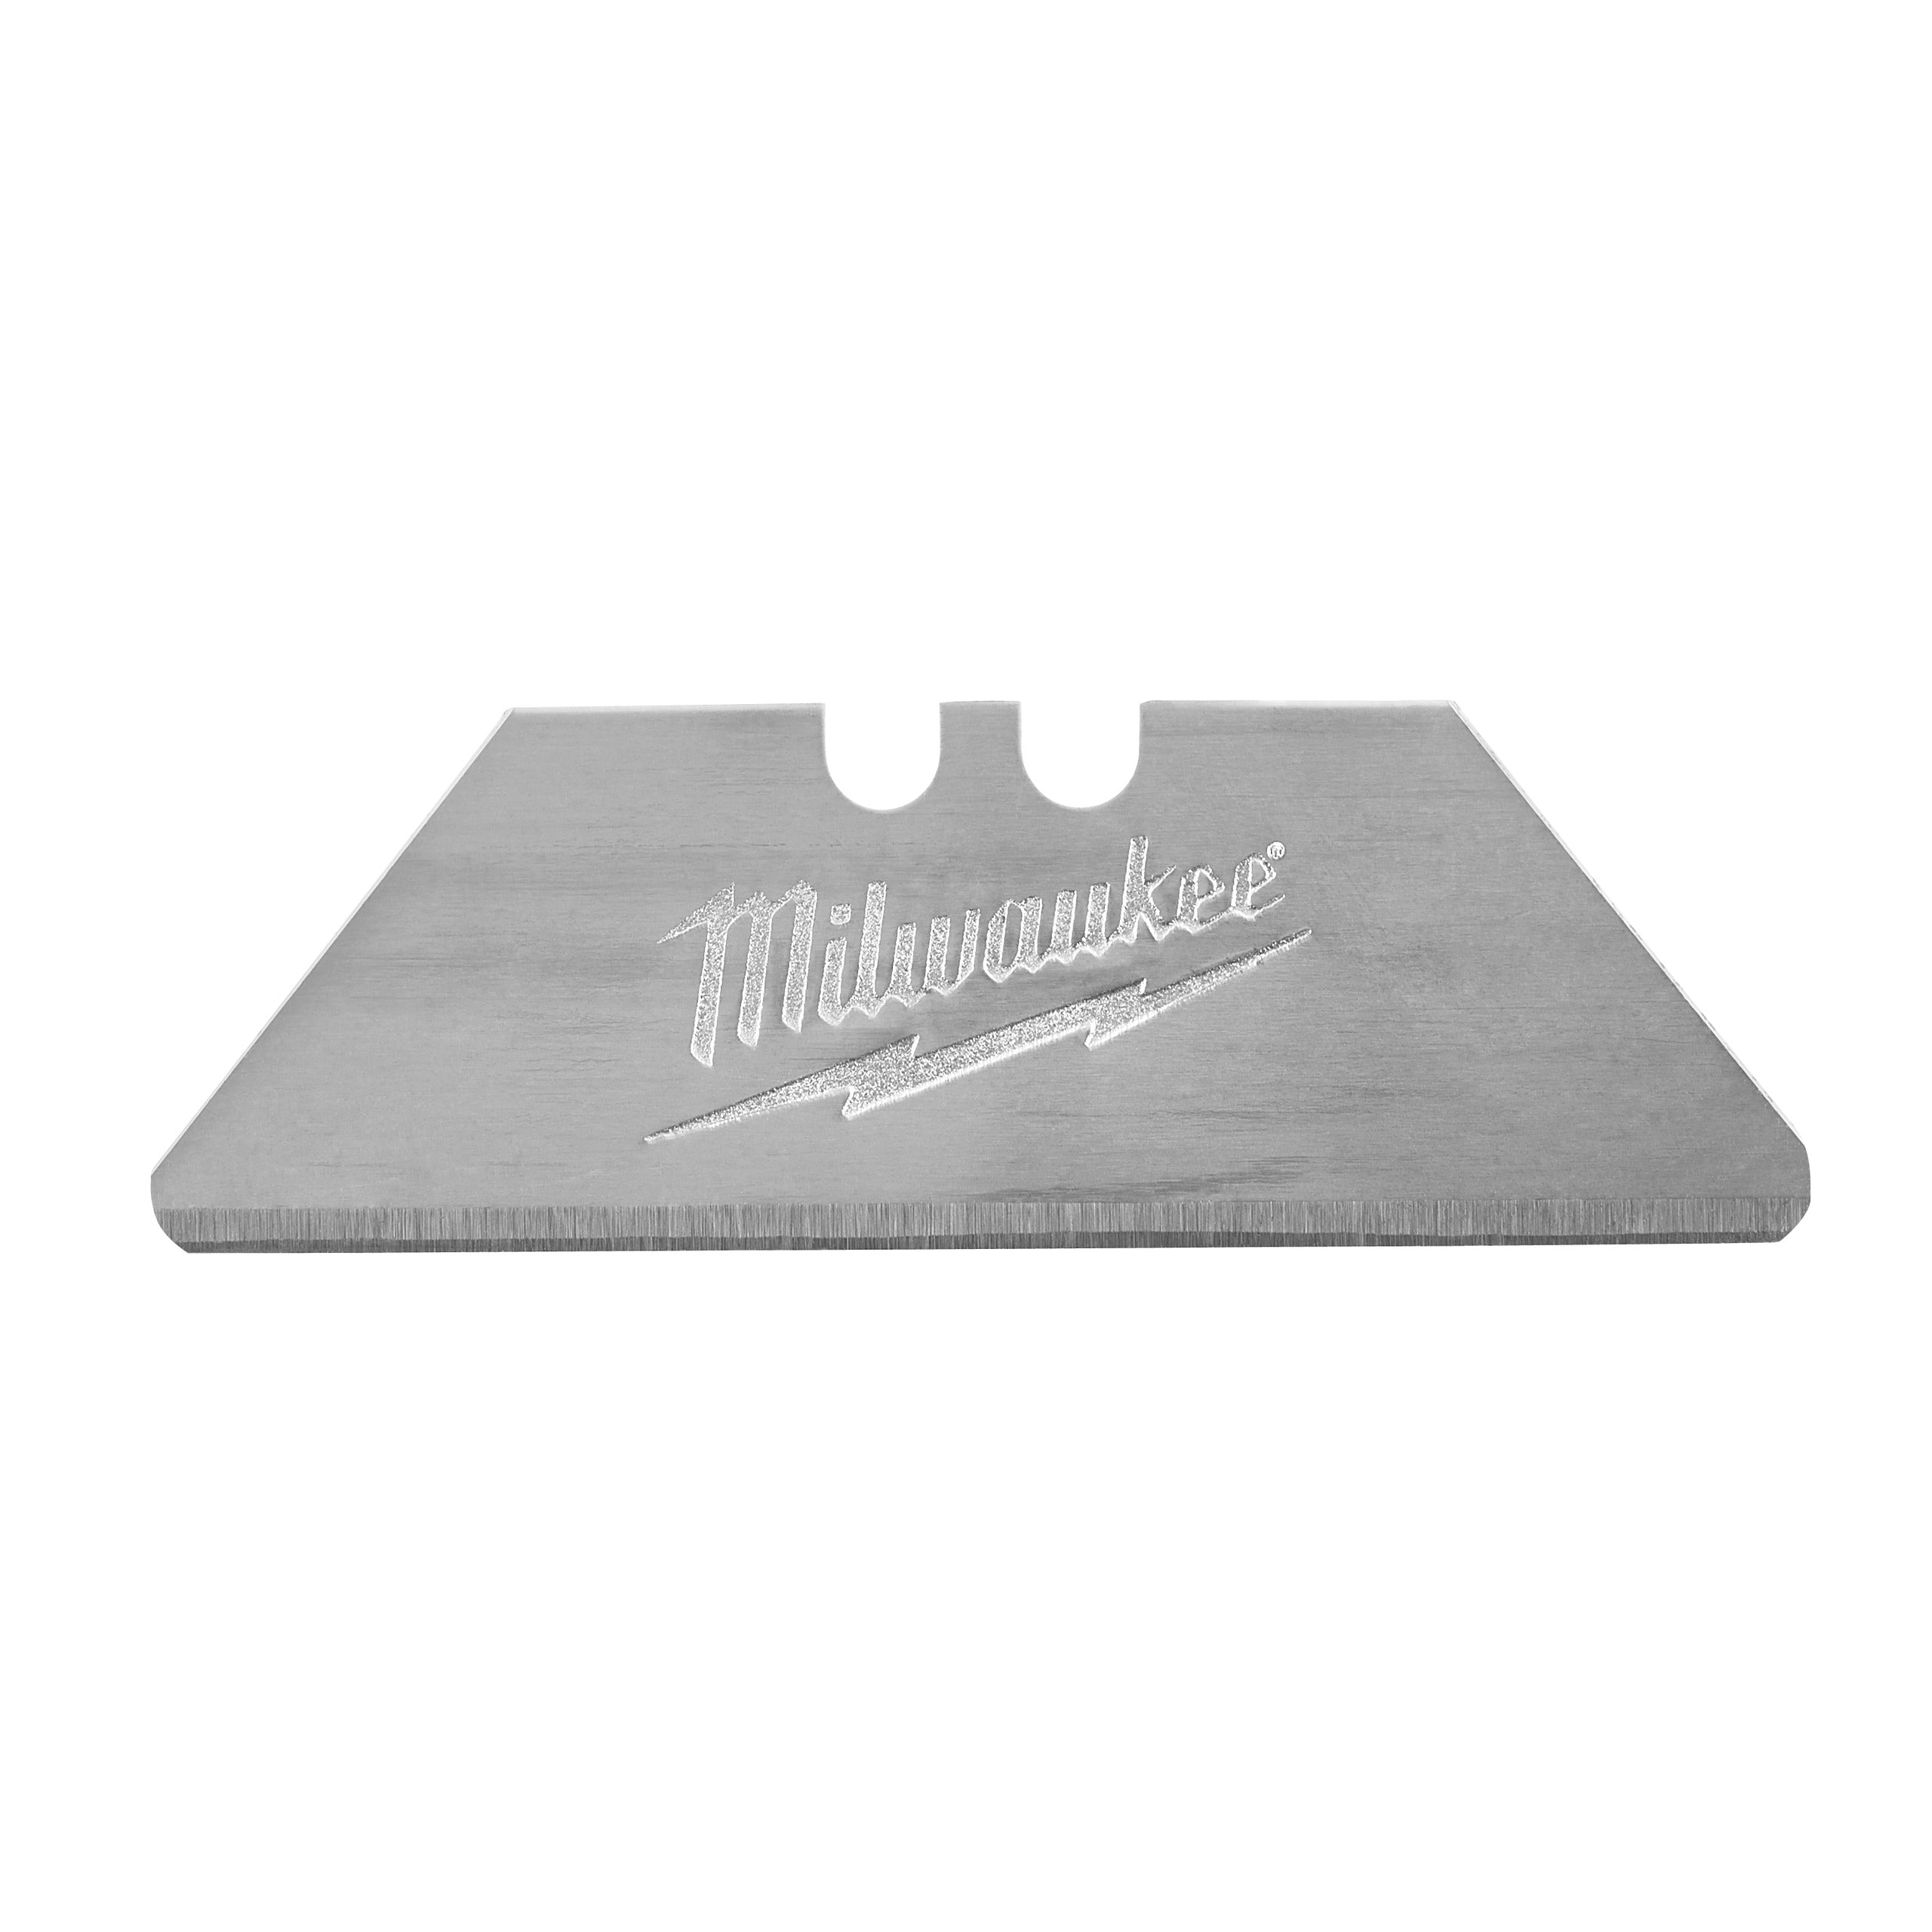 Lame de schimb Milwaukee pentru cuttere de tăiat cartoane, set 5 bucăți, cod 48221934